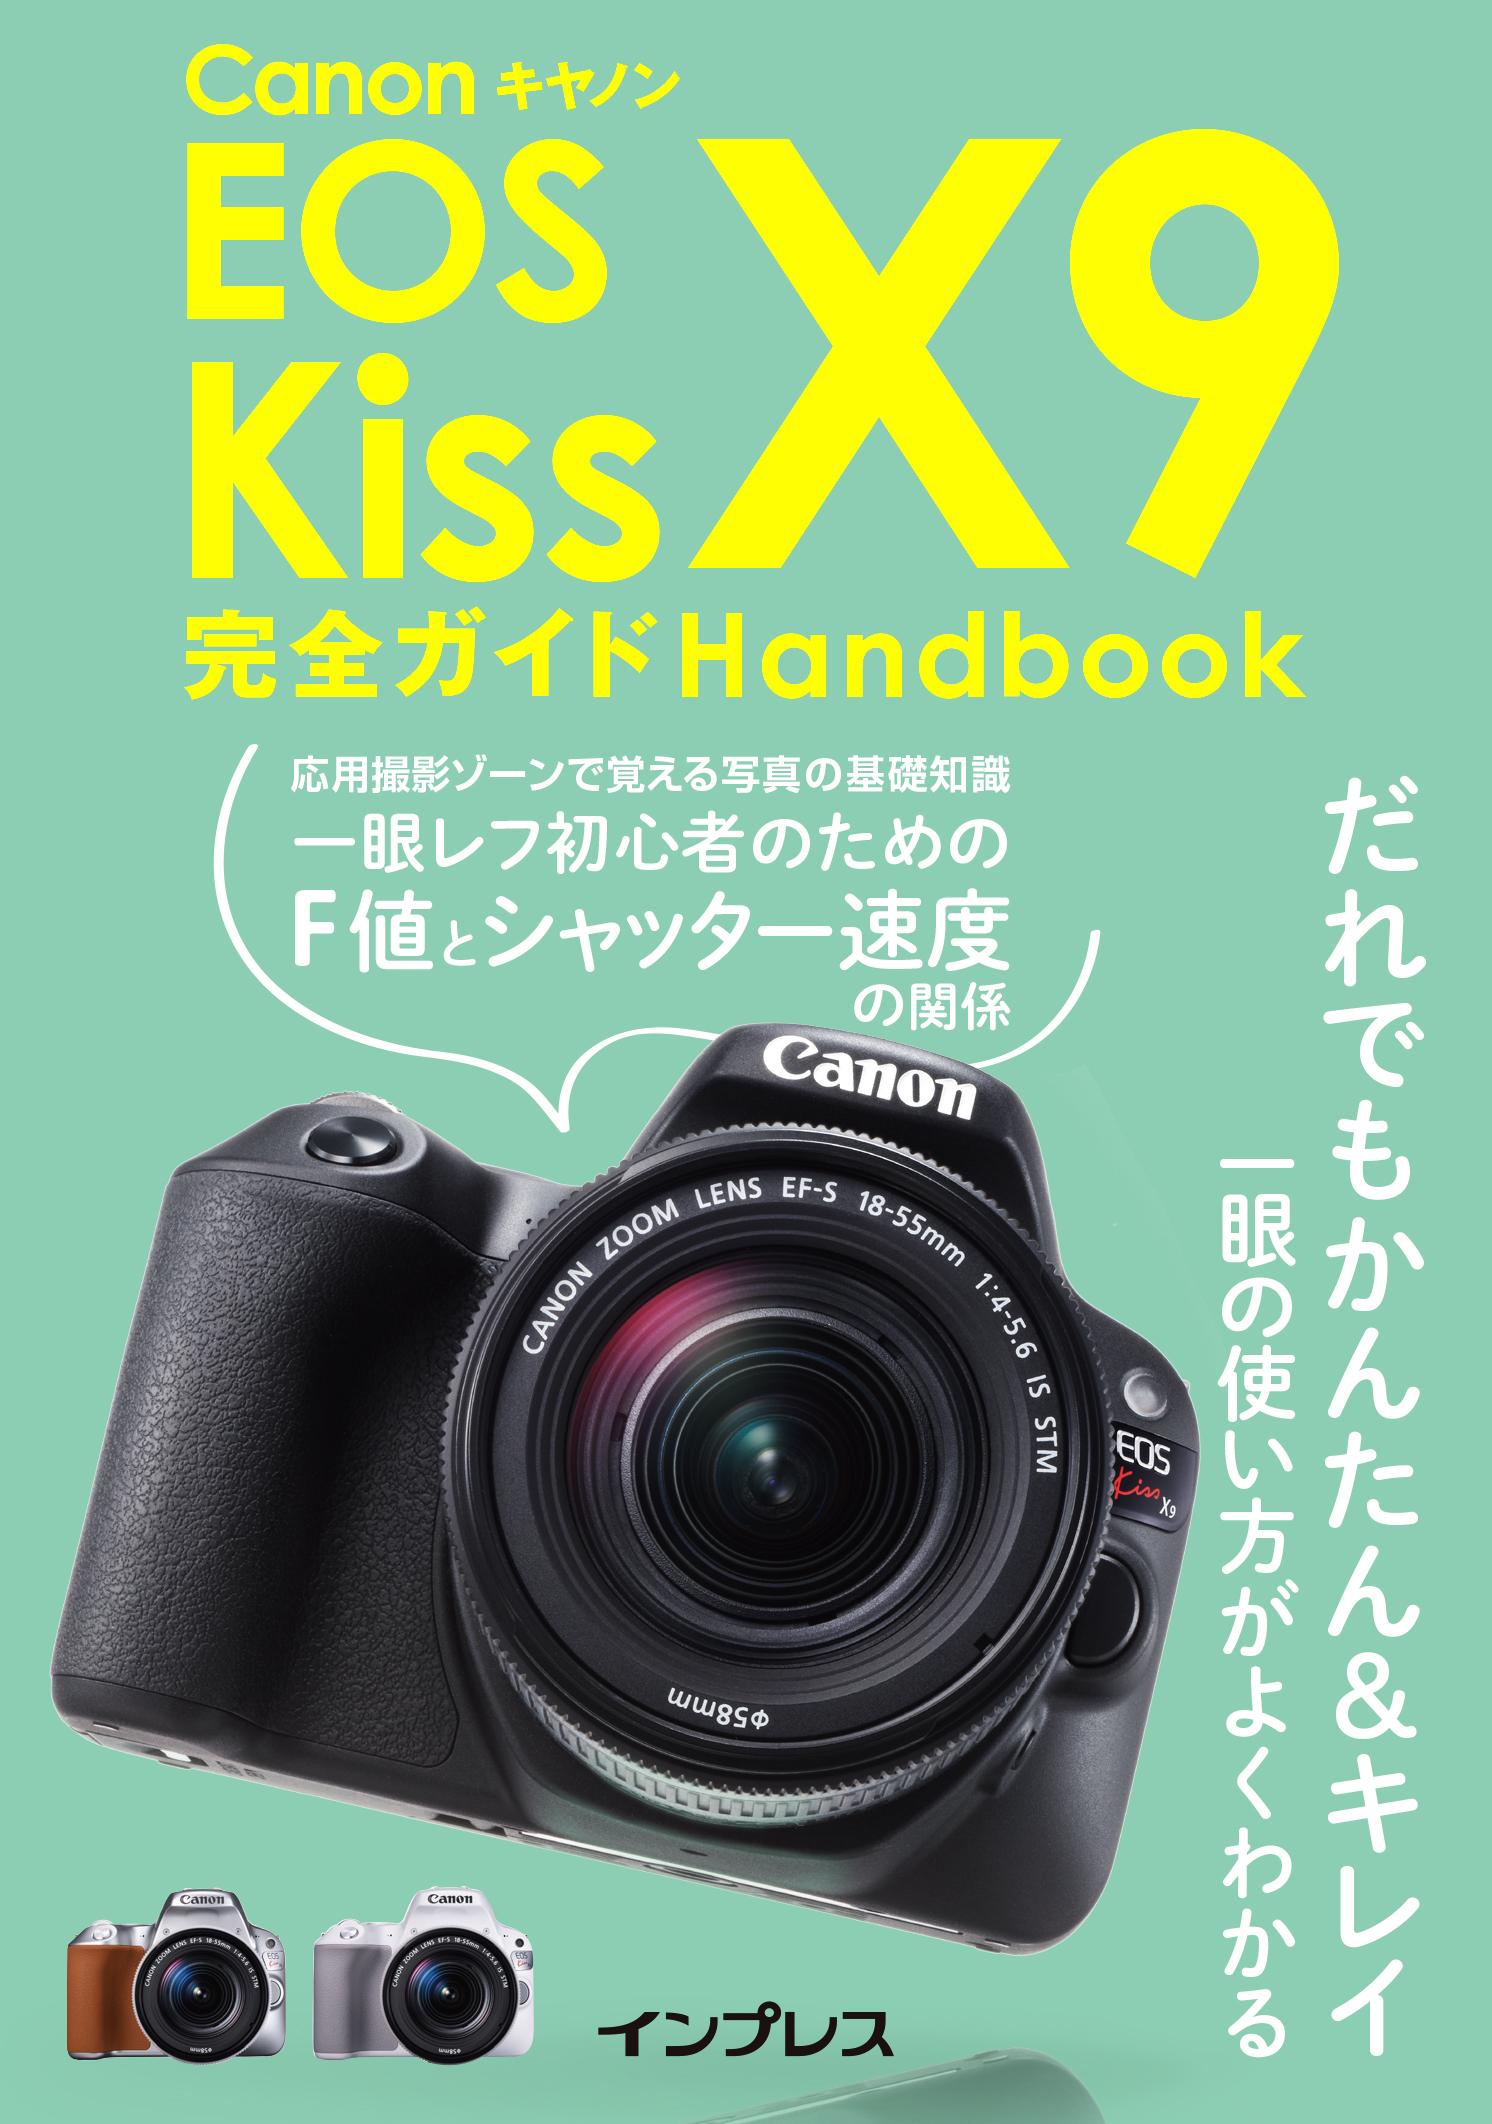 キヤノン EOS Kiss X9完全ガイド Handbook